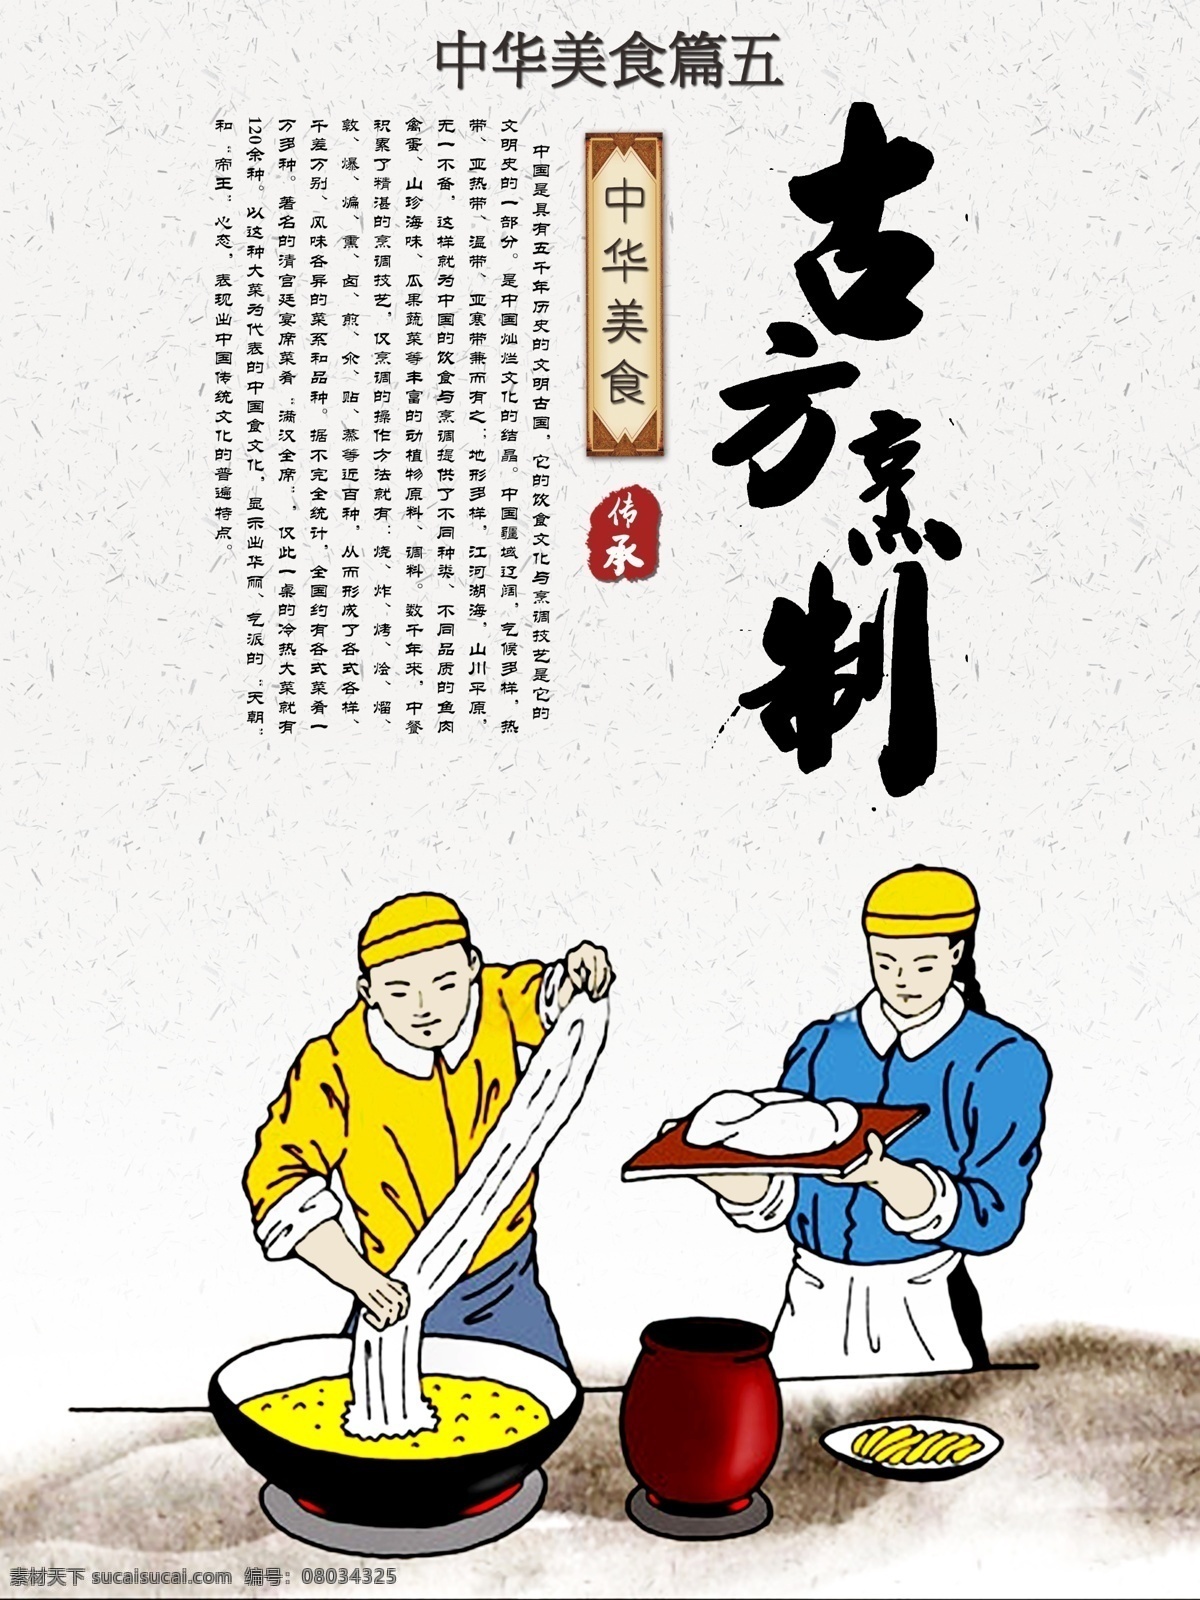 中华 美食文化 宣传 中华美食 美食展板 毛笔字 展板设计 手绘 插画 饮食文化 文化宣传 psd素材 水墨 中国风 面条 白色